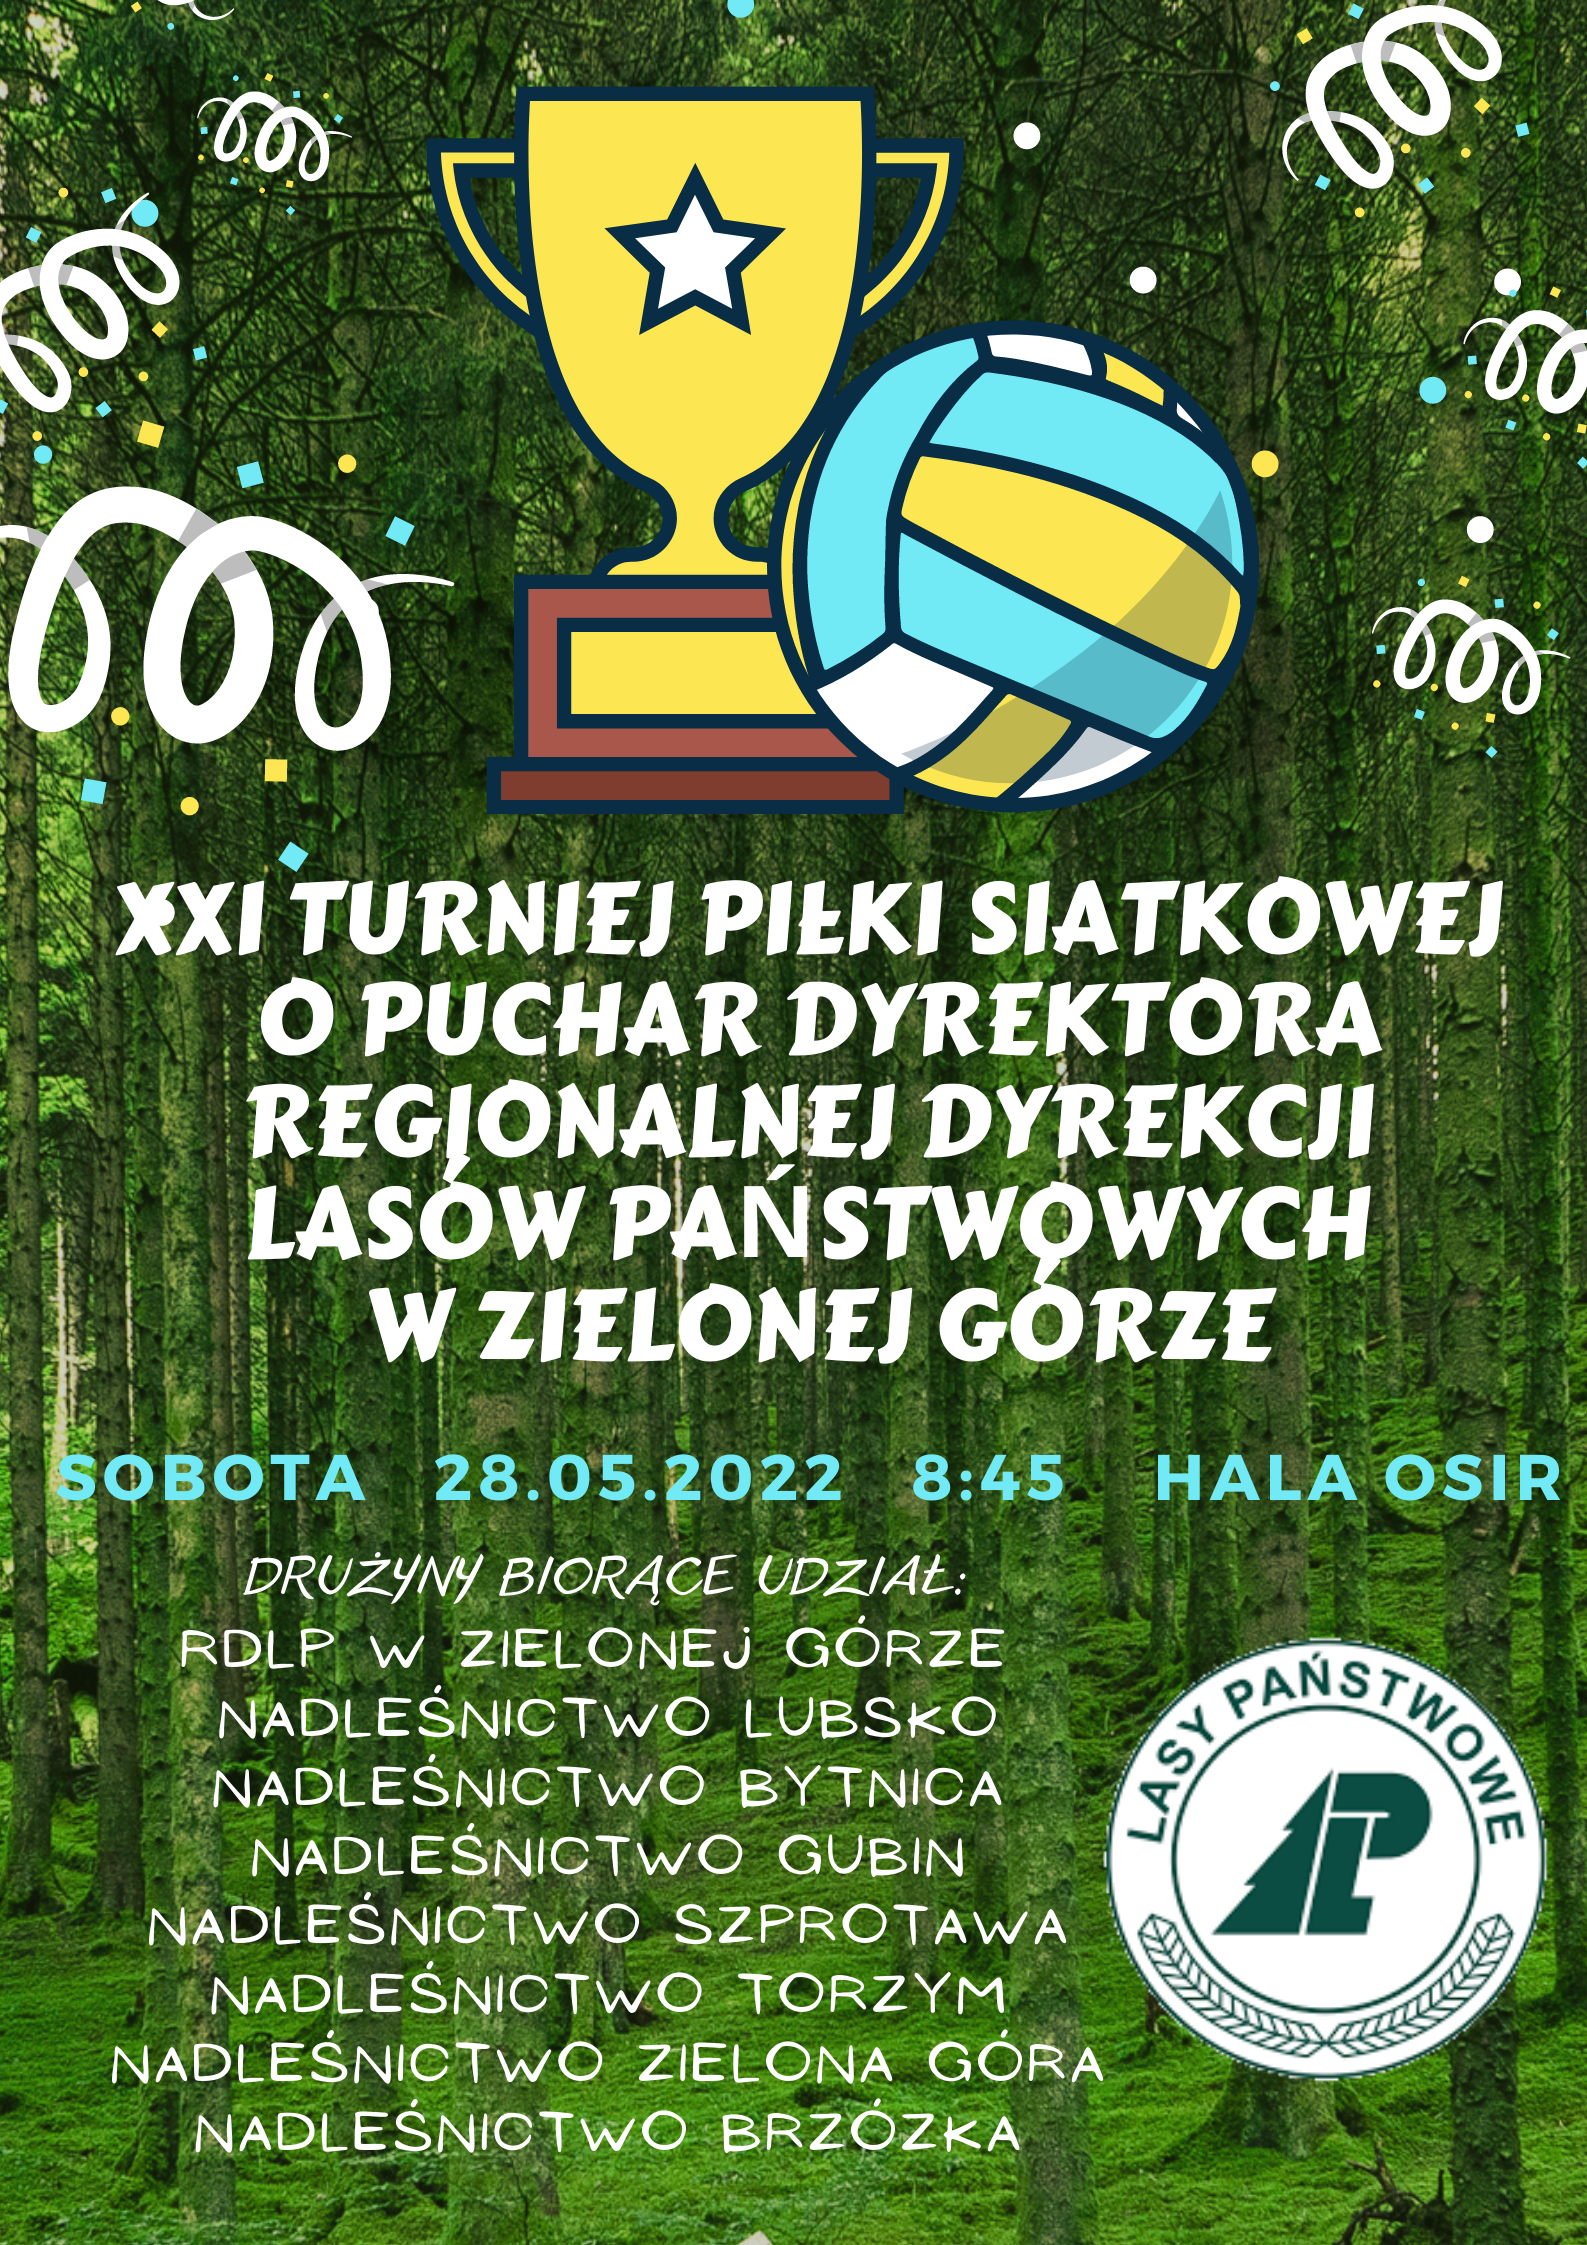 Turniej Lasy Państwowe - 28 maja - hala osir - 9:00